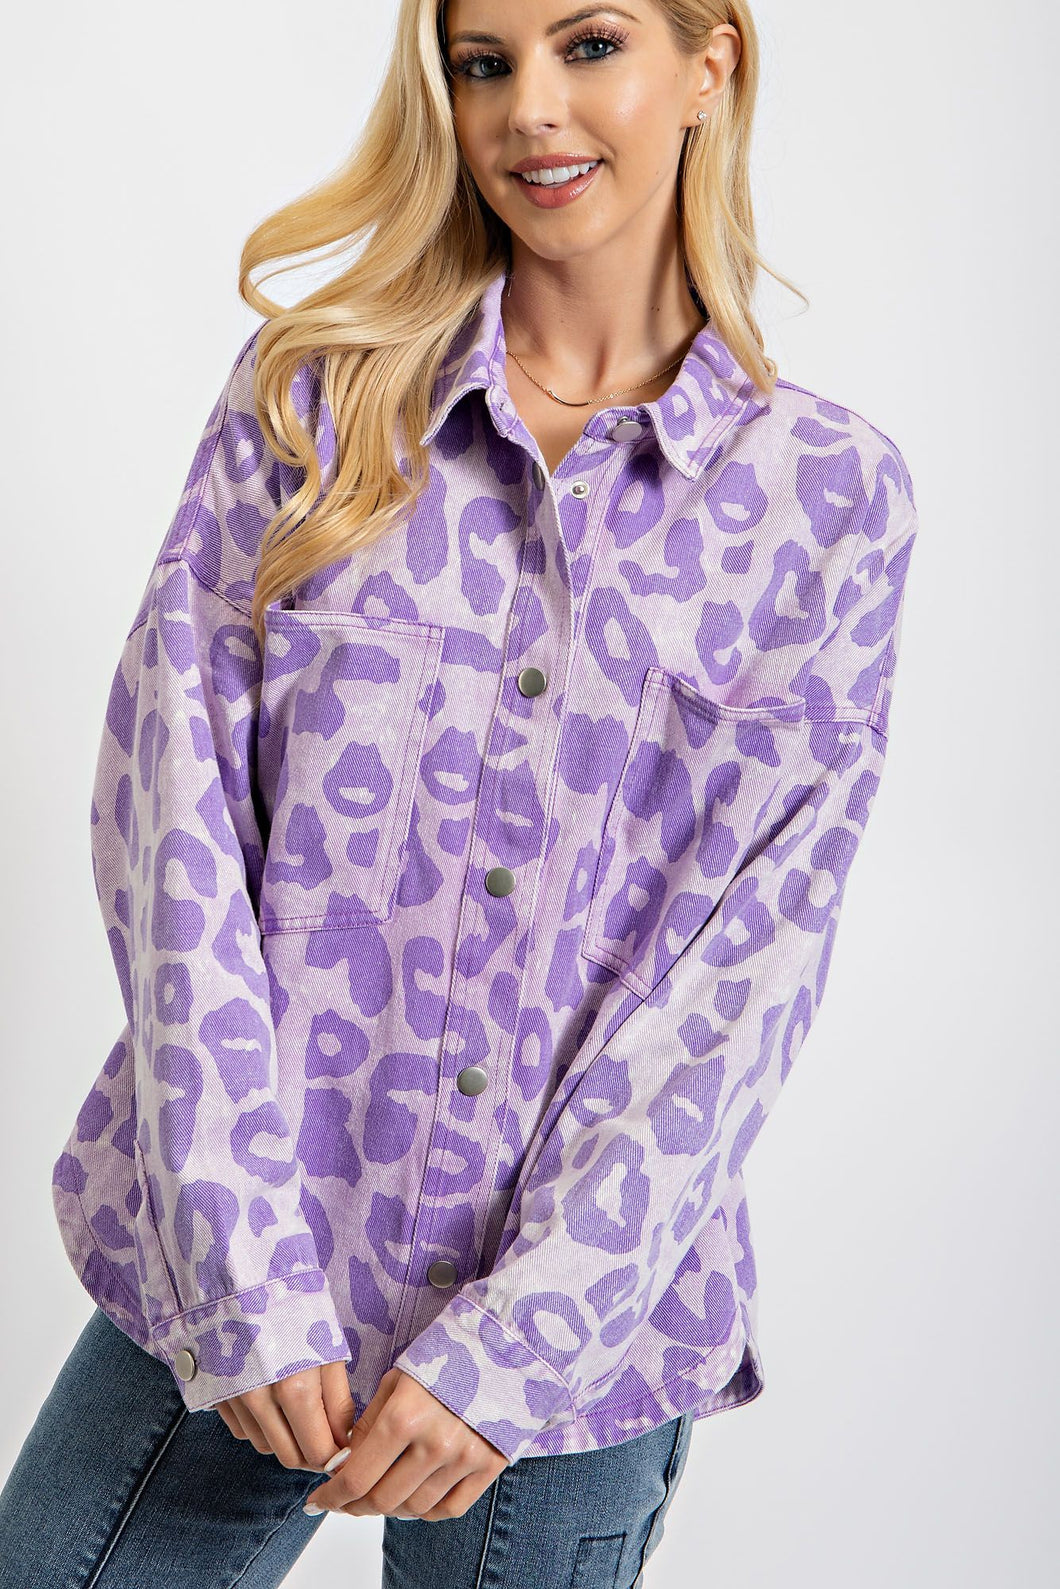 Easel Leopard Print Shacket in Lavender Shacket Easel   